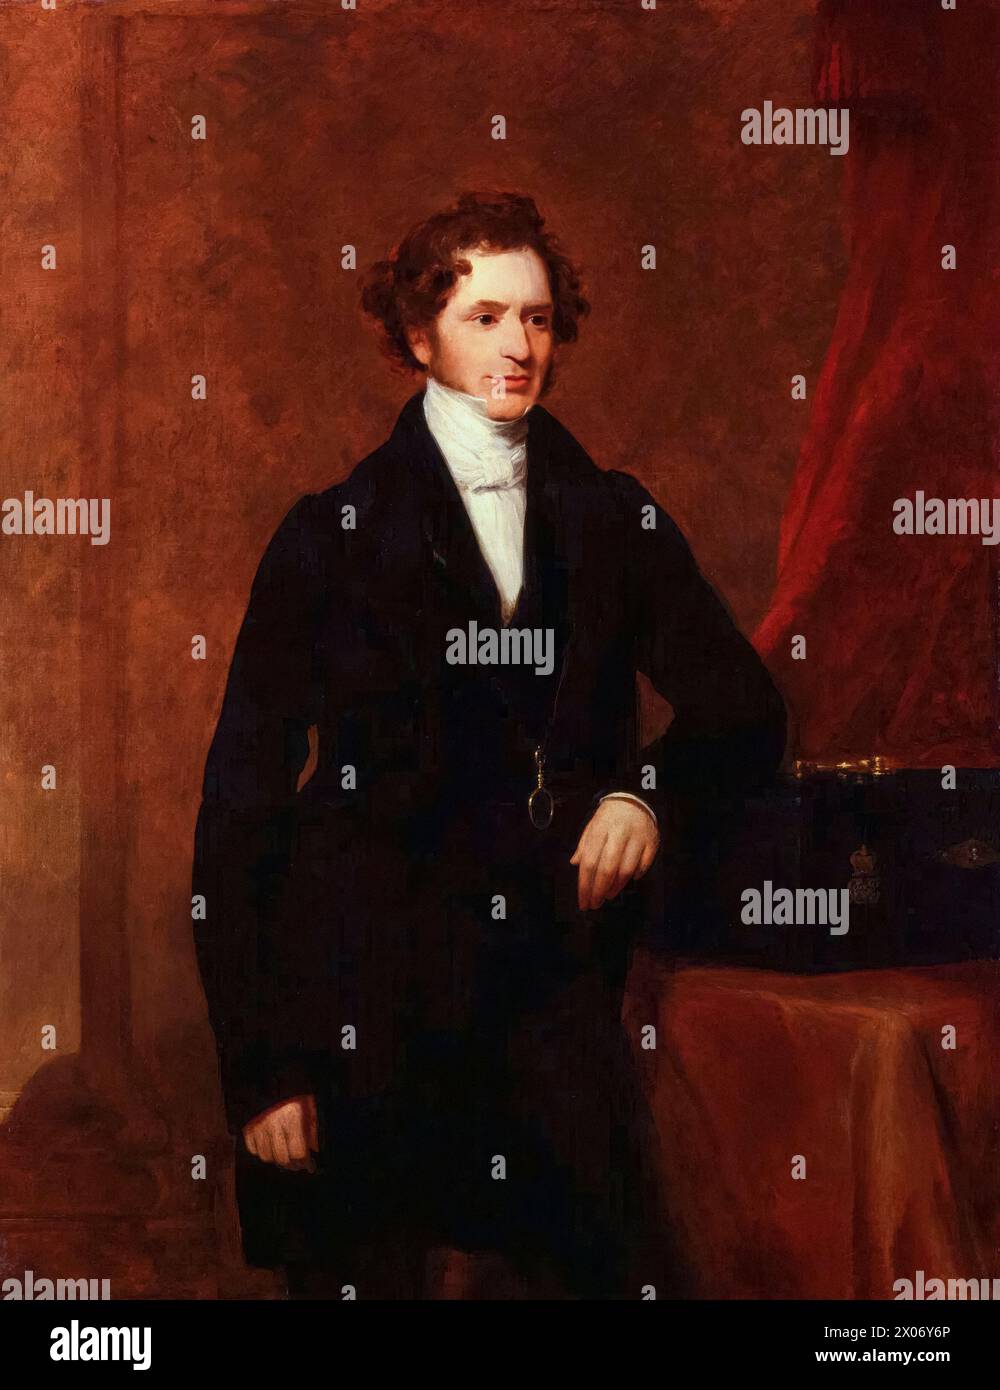 Edward Smith-Stanley, XIV conte di Derby (1799-1869), noto come "Lord Stanley", servì tre volte come primo ministro del Regno Unito nel 1852, 1858-1859, e 1866-1868, ritrattista in olio su tela di Frederick Richard Say, 1844 Foto Stock